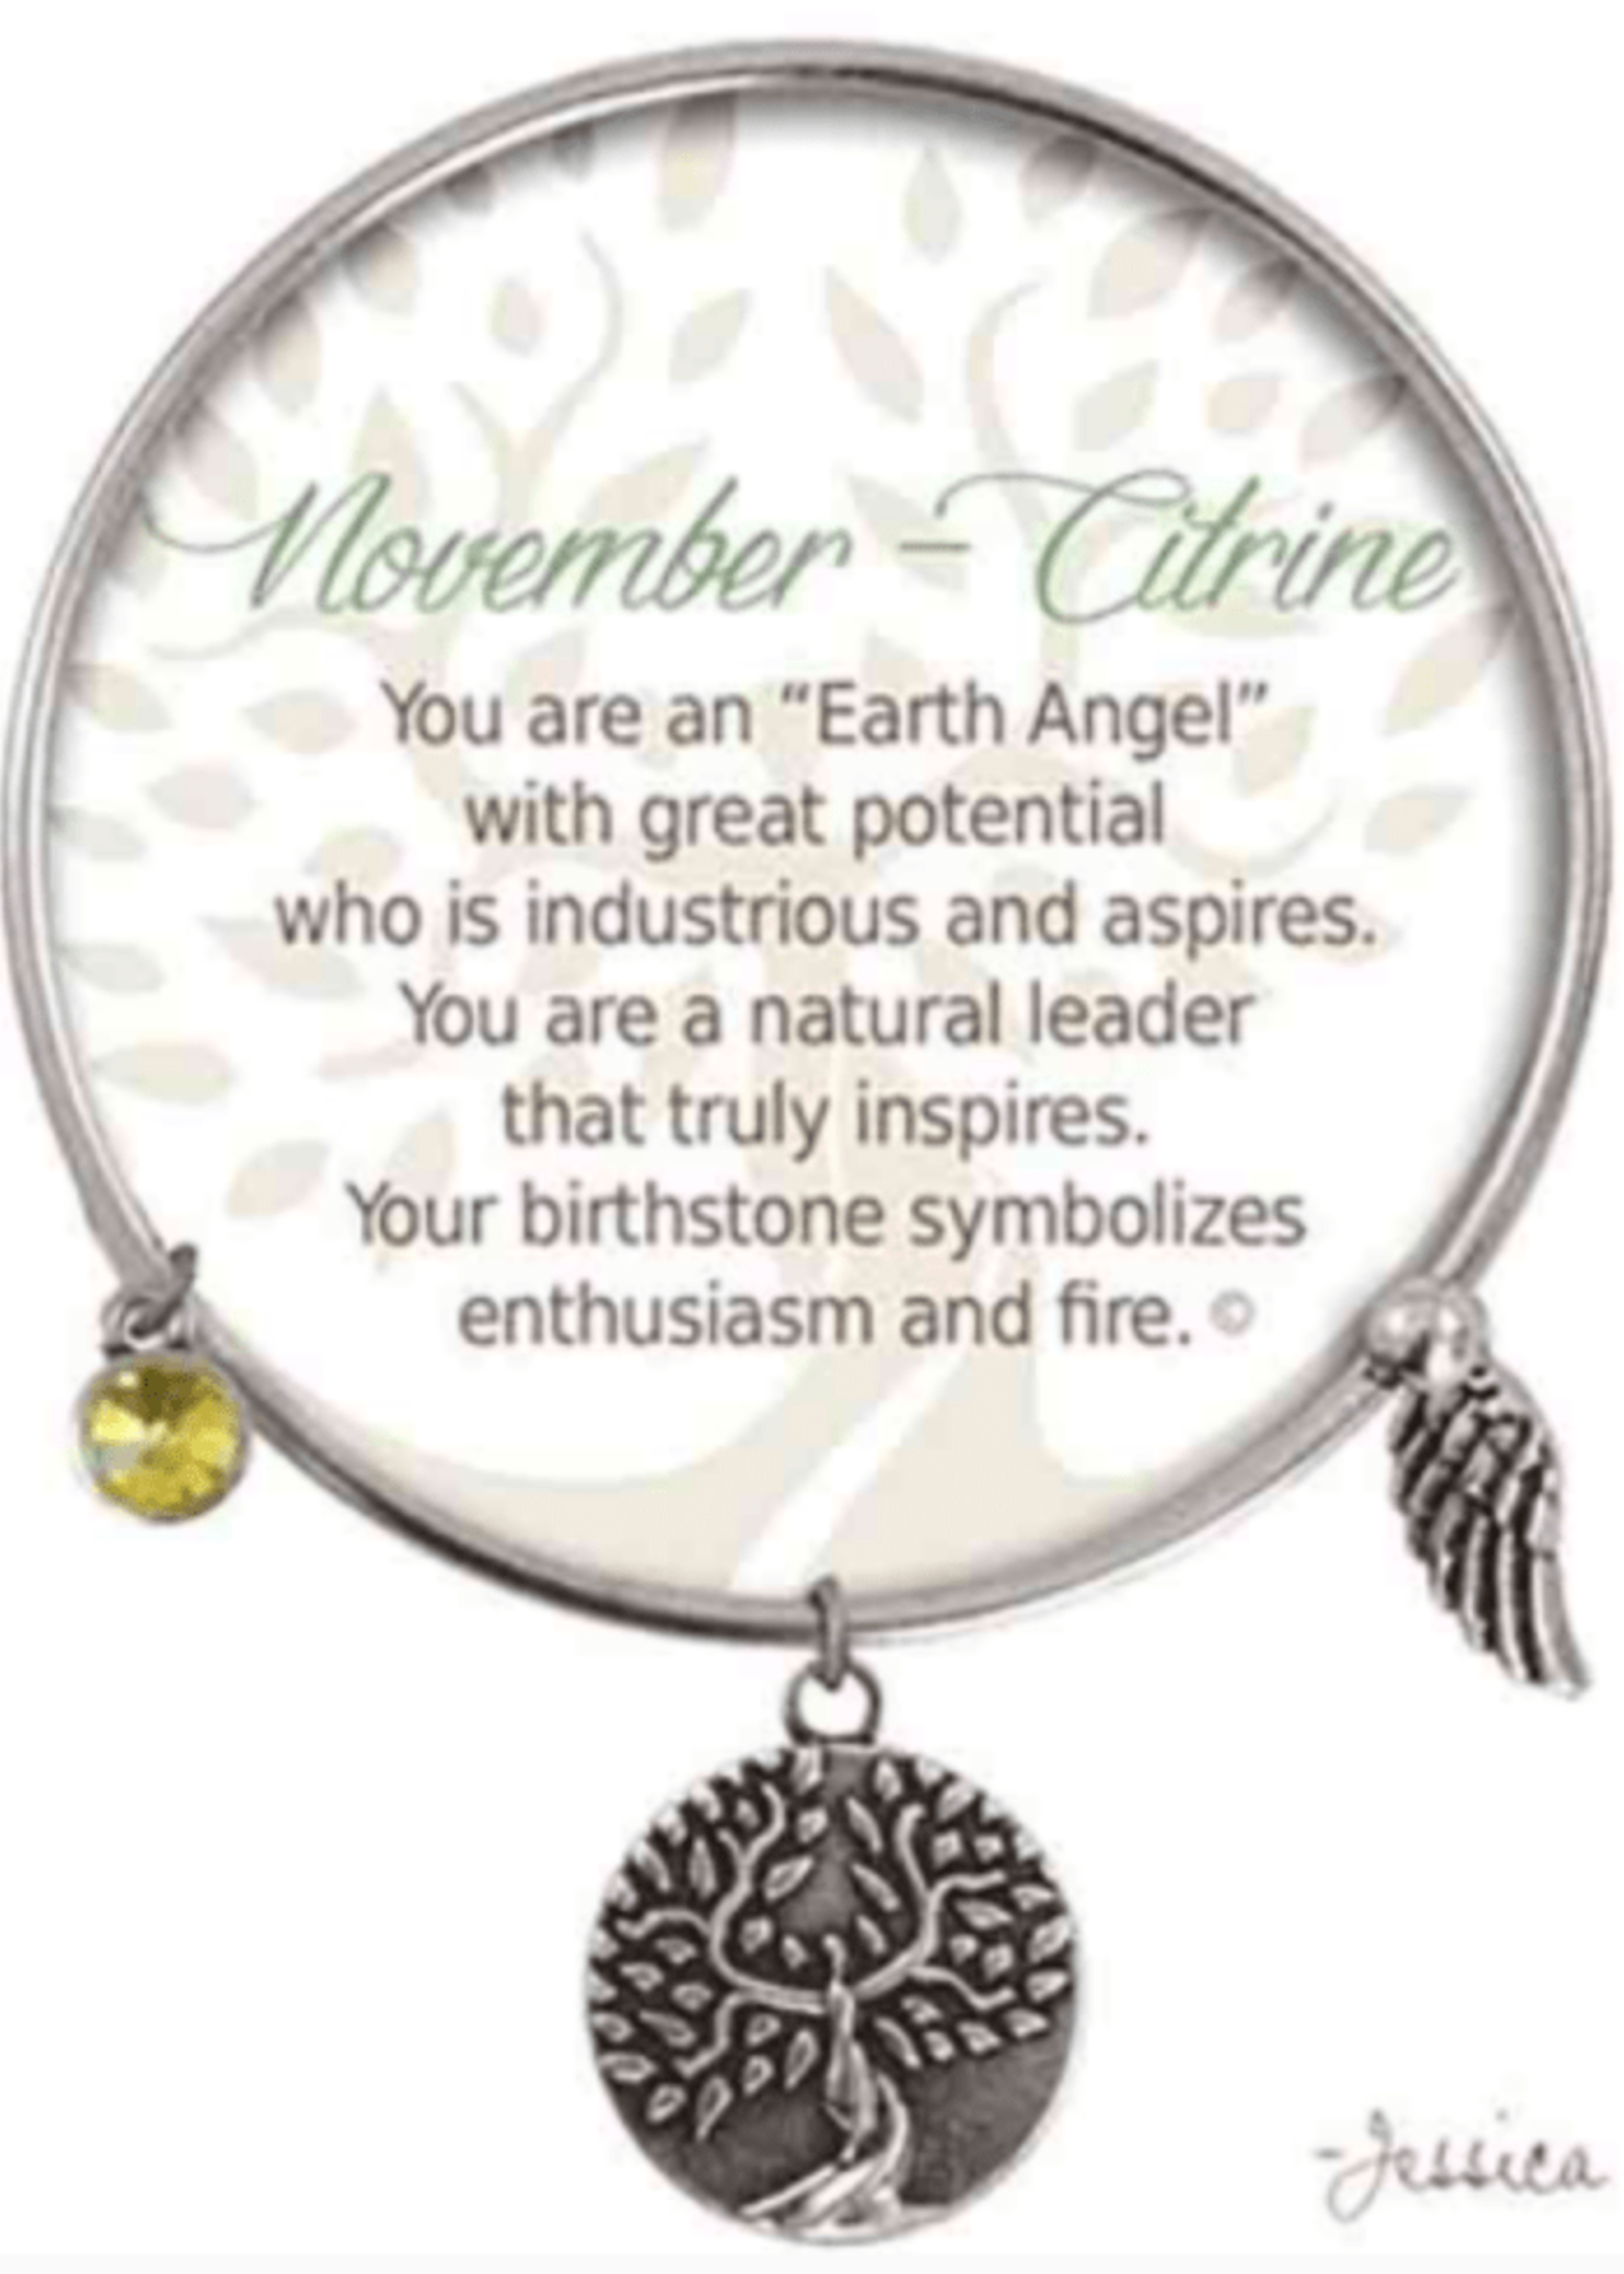 EARTH ANGEL BRACELET - NOVEMBER: CITRINE